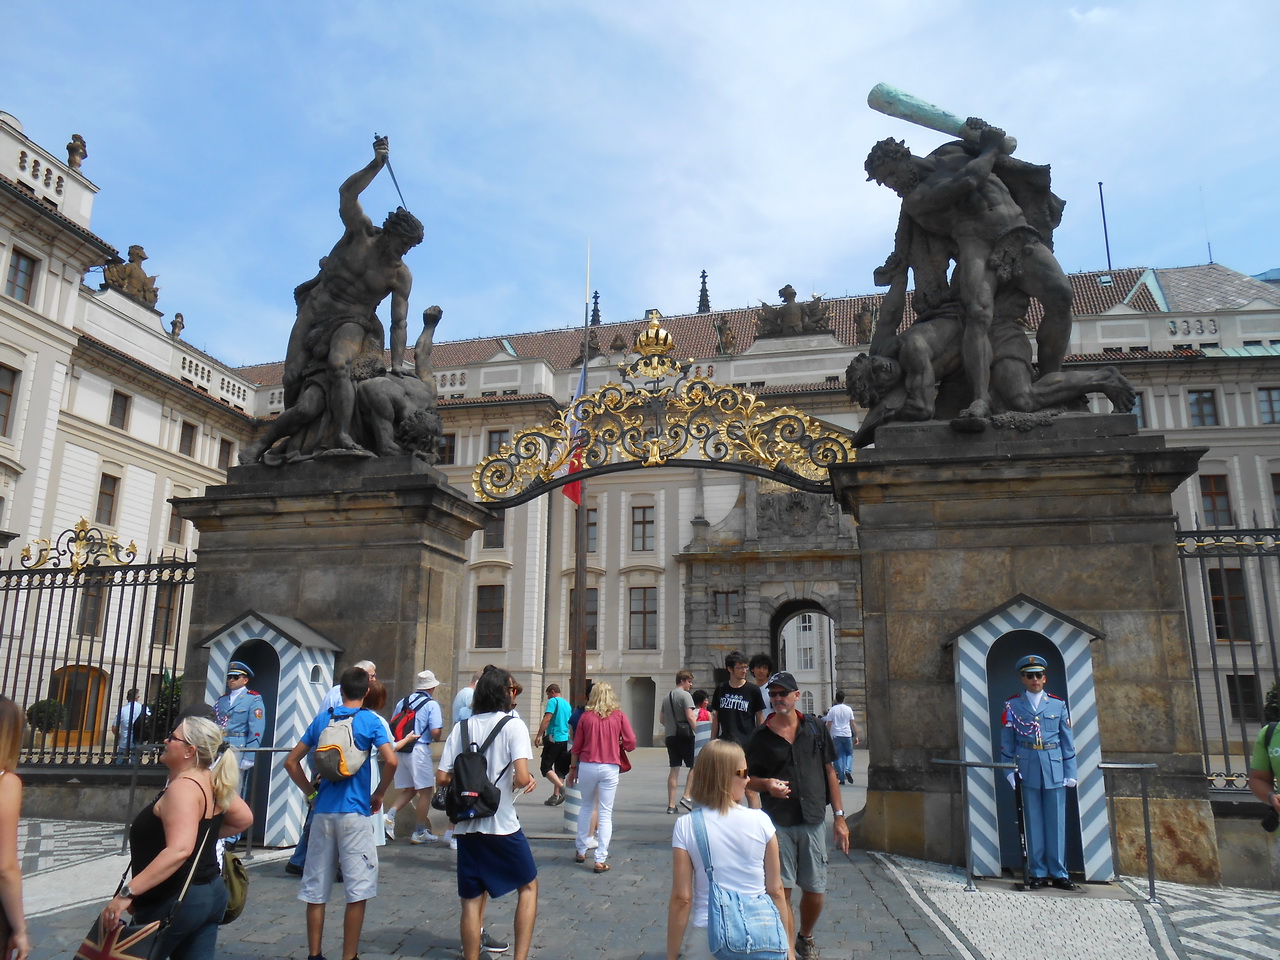 ТОП 10 достопримечательностей Праги: Пражский град